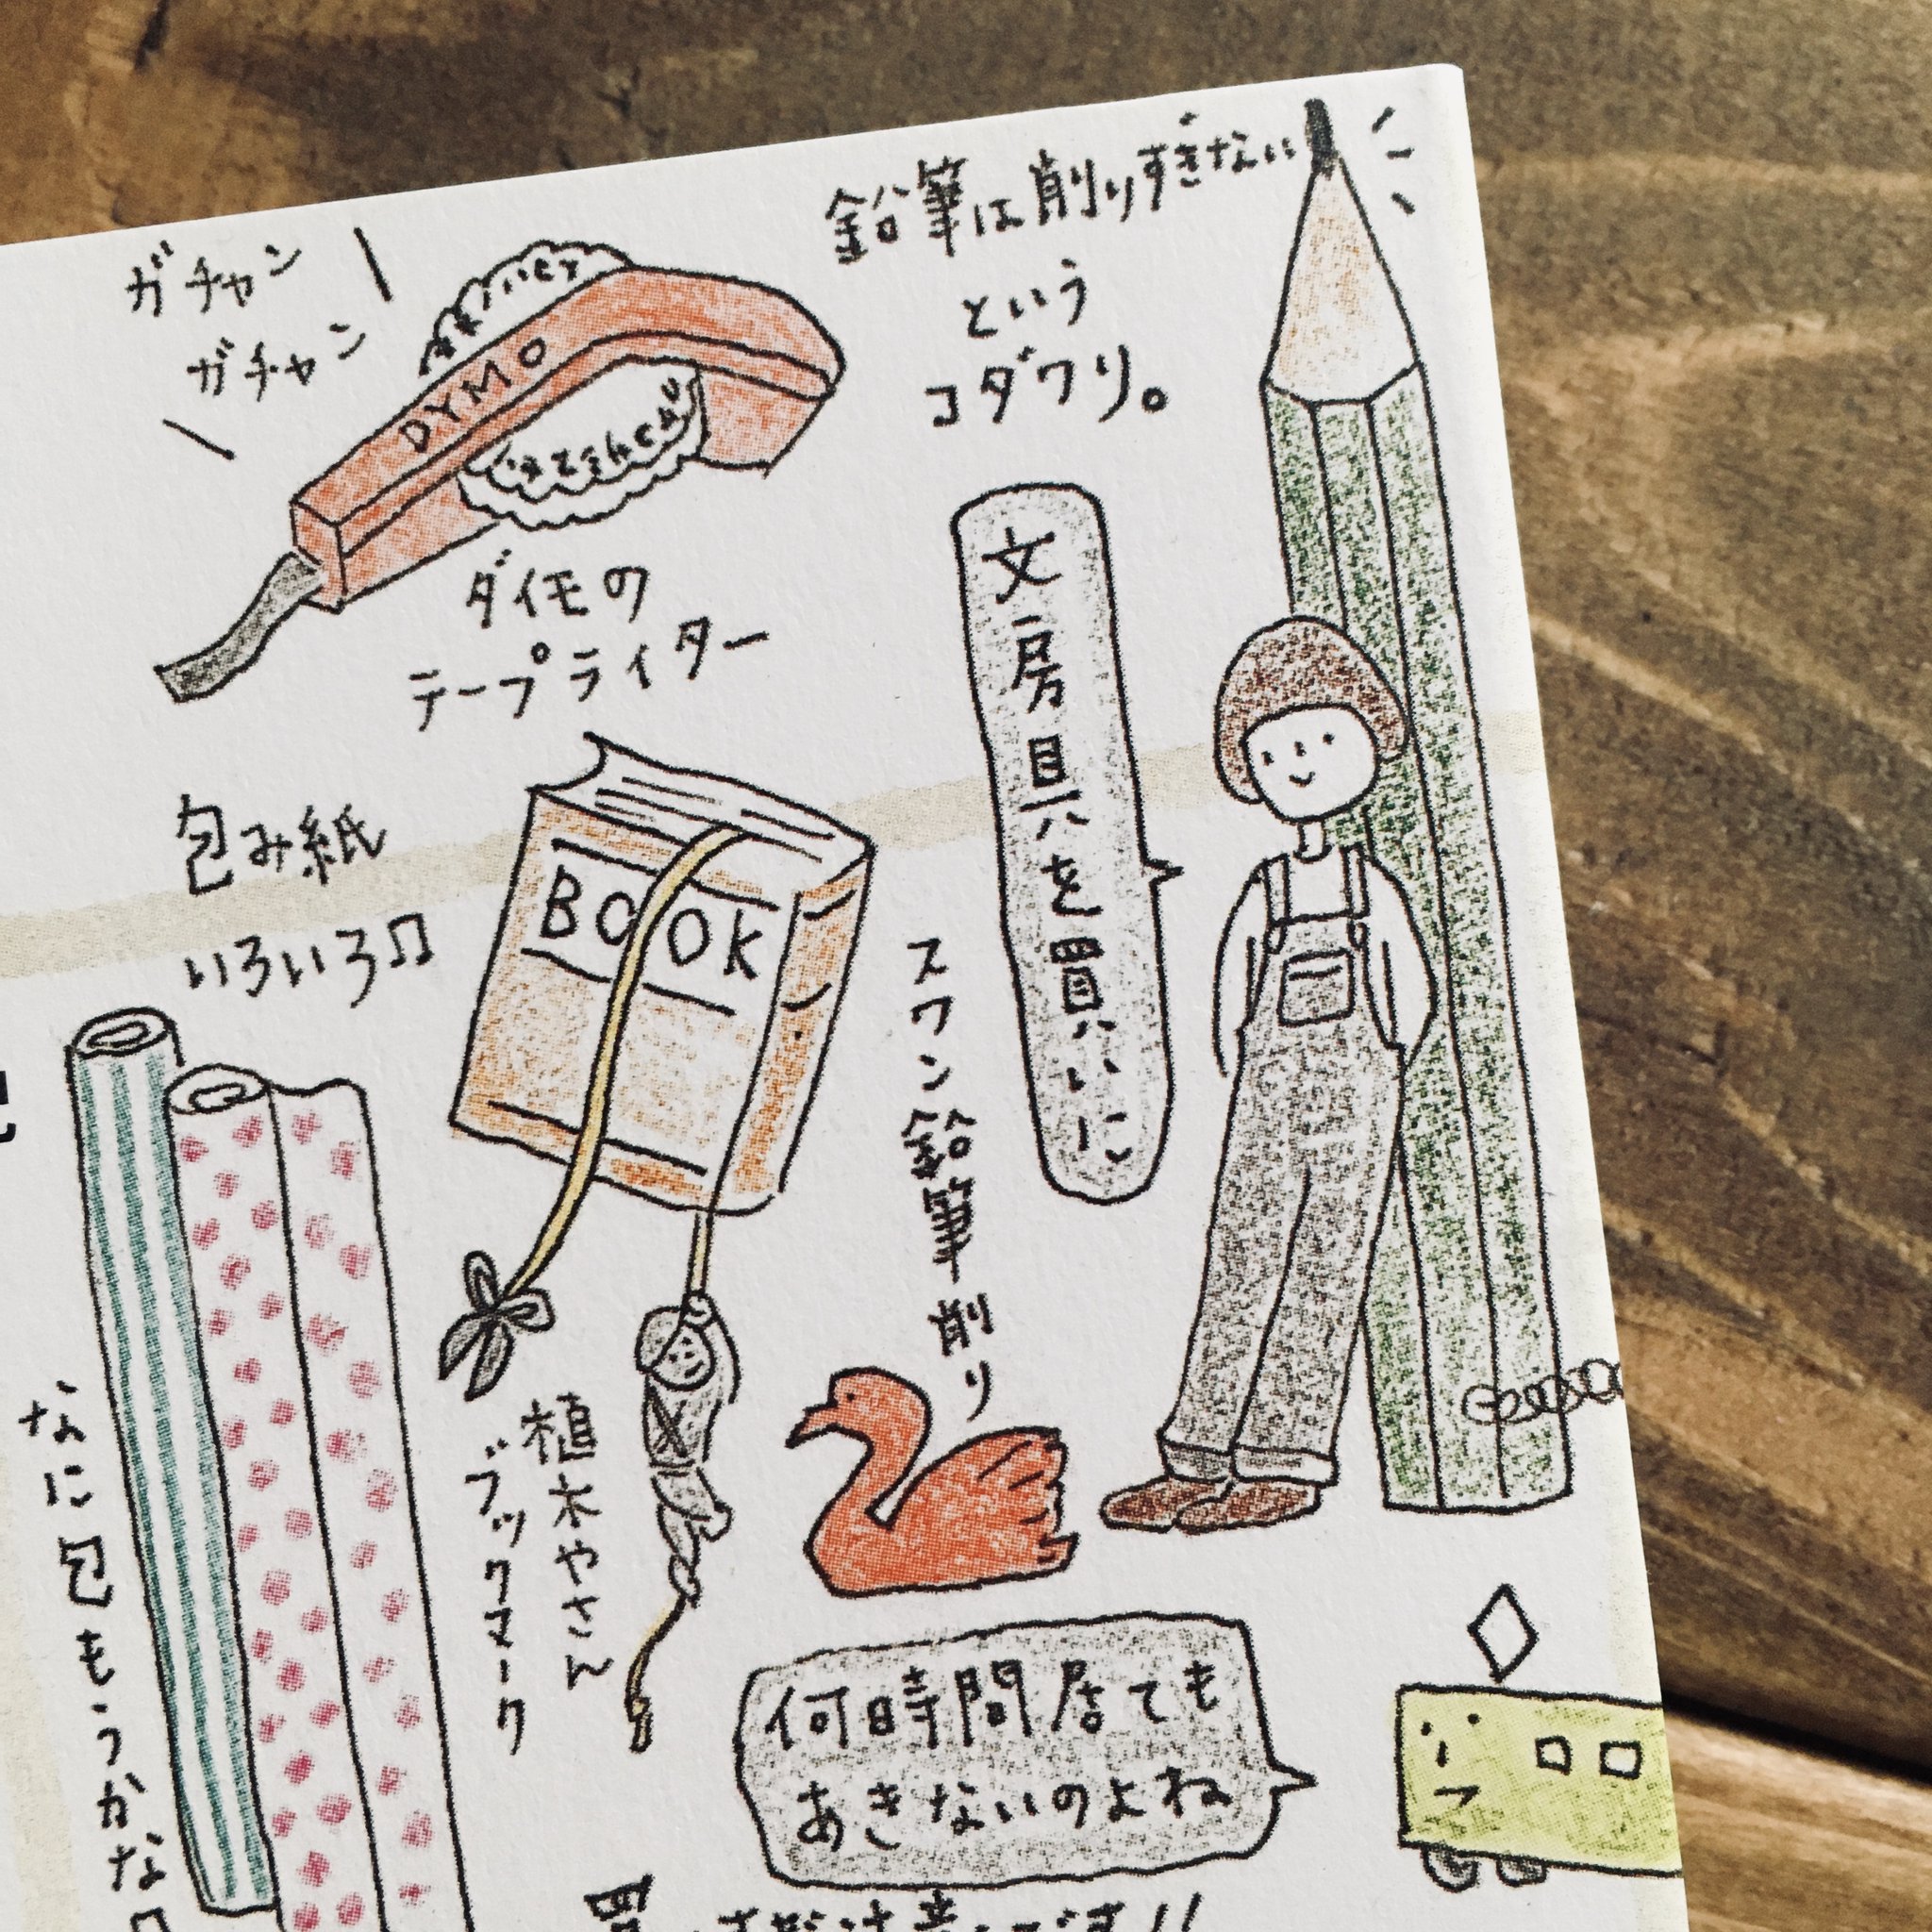 Yoko Yamada 本屋 文具物語 店主 本の編集者 今日の文具物語 新入荷 女優 モデルの菊池亜希子さんによる 町歩きエッセイ もう10年以上前に発行された本ですが かわいらしくホッコリするイラストで 街歩きの楽しさがぐいぐいと伝わってきます